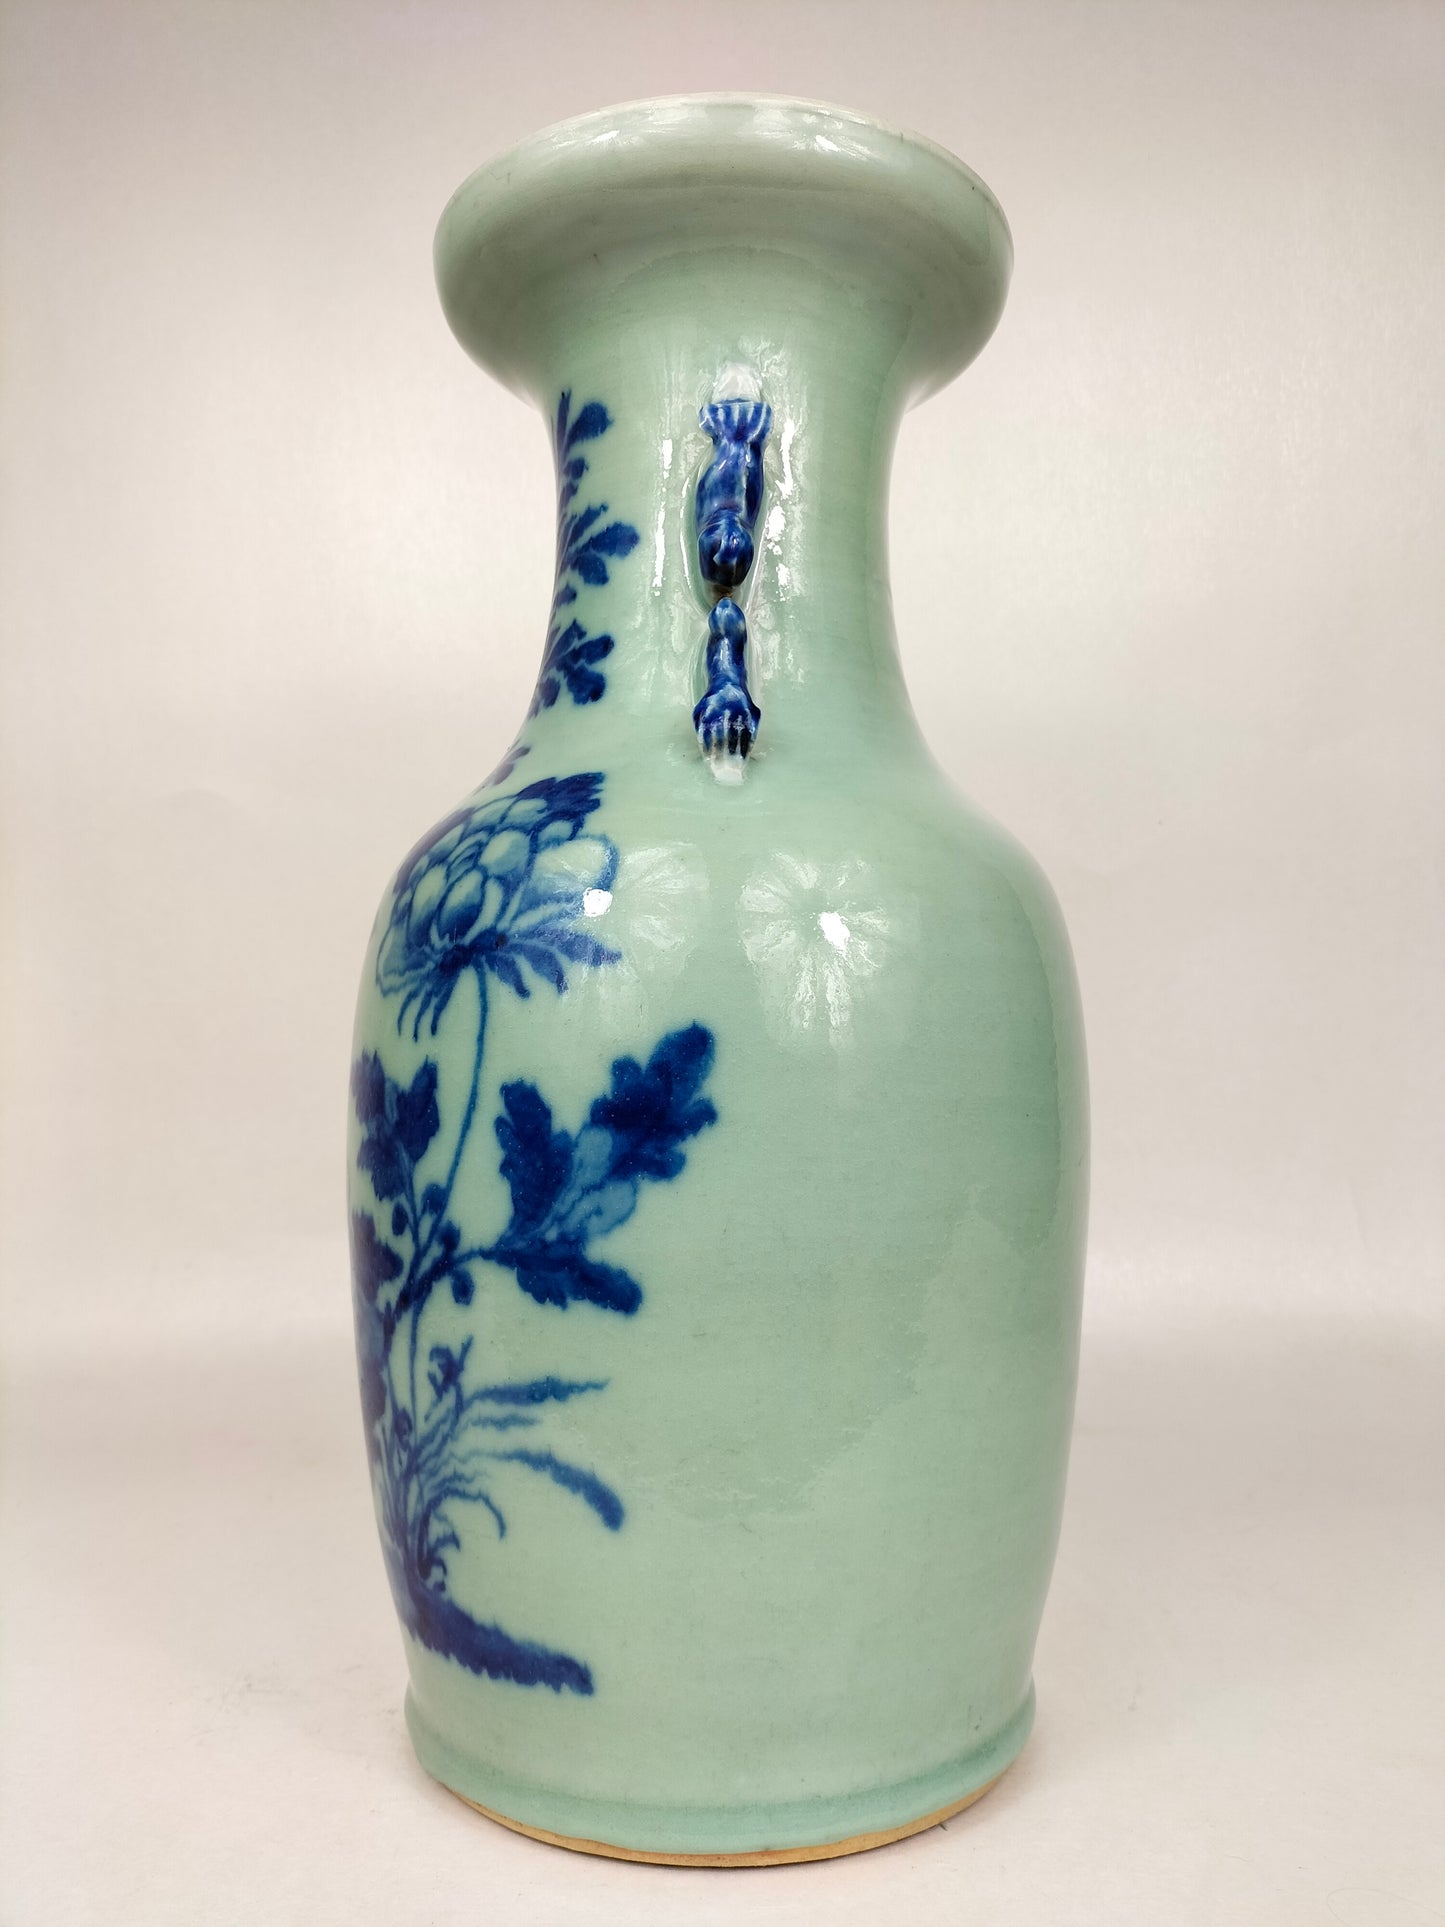 Antigo vaso chinês de cor celadon decorado com pássaros e flores // Dinastia Qing - século XIX